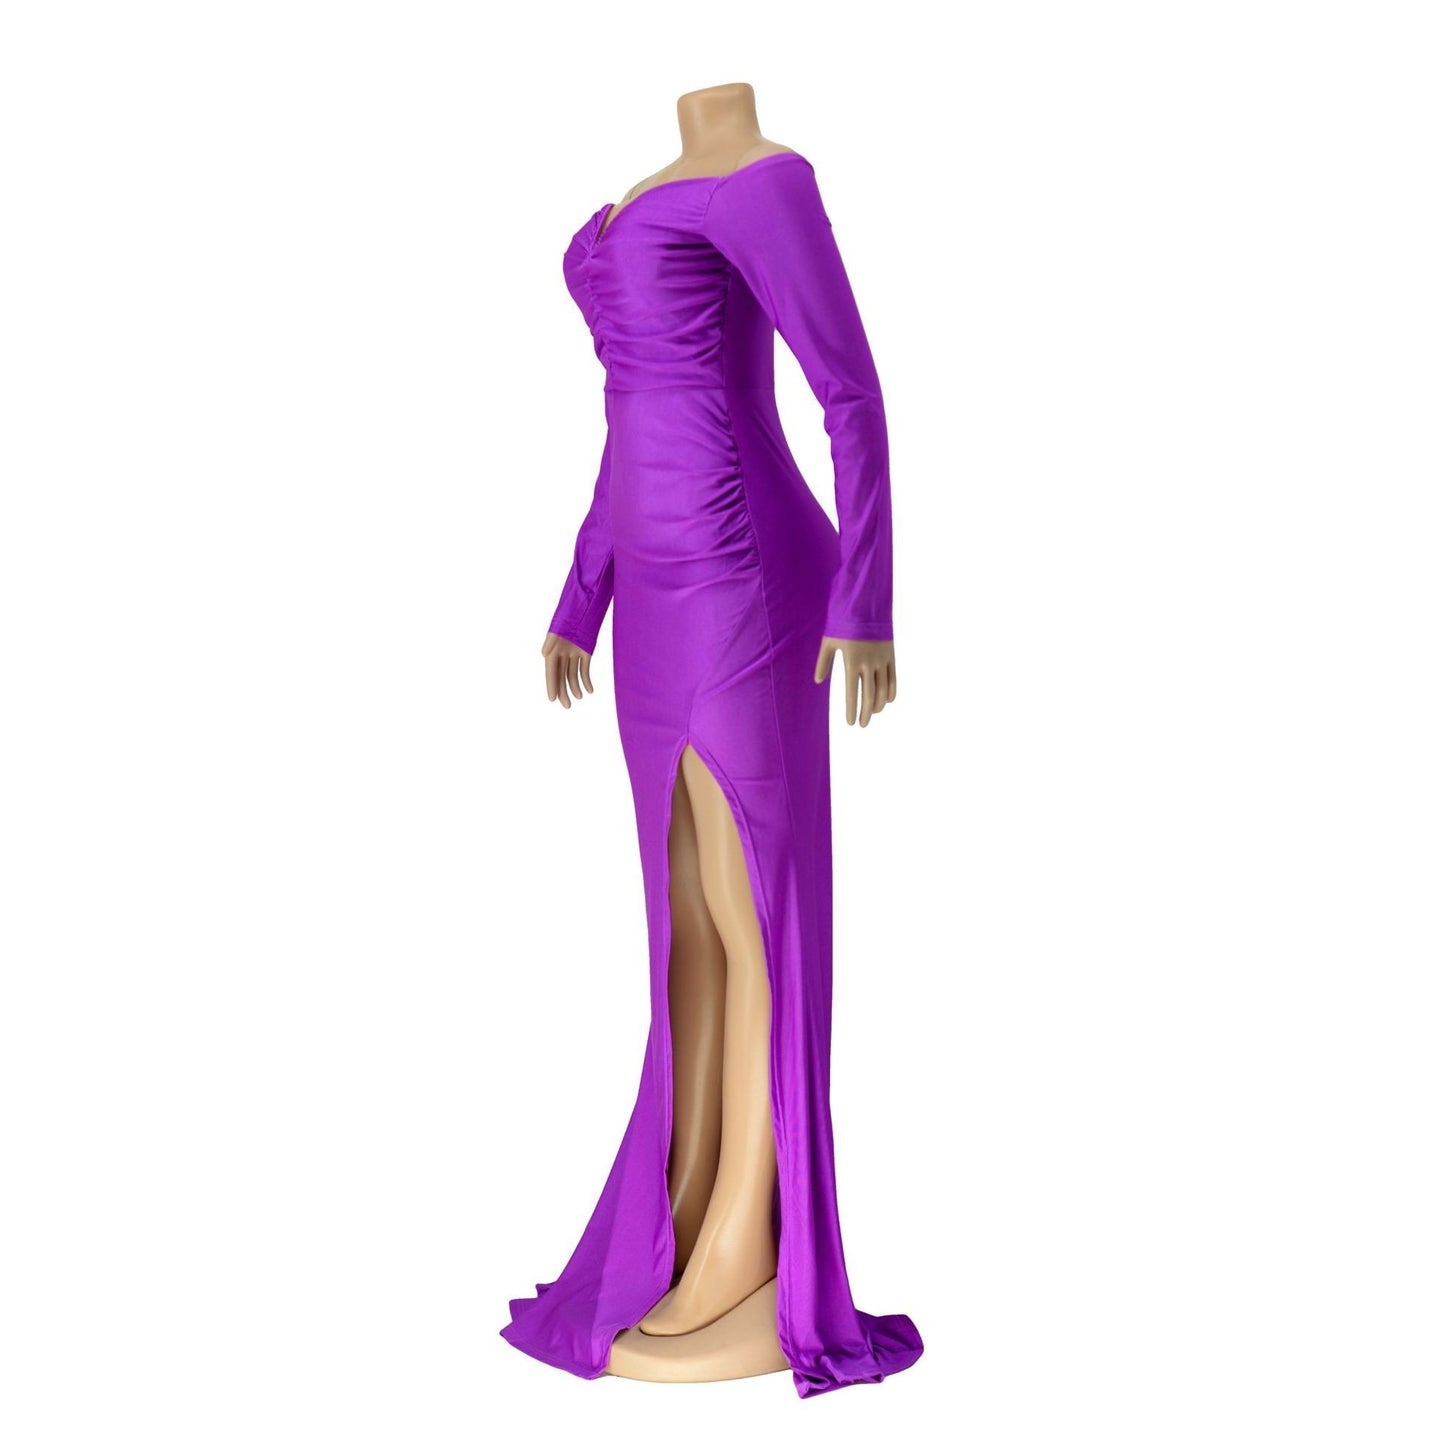 Elegant Off-Shoulder Long Sleeve Dress